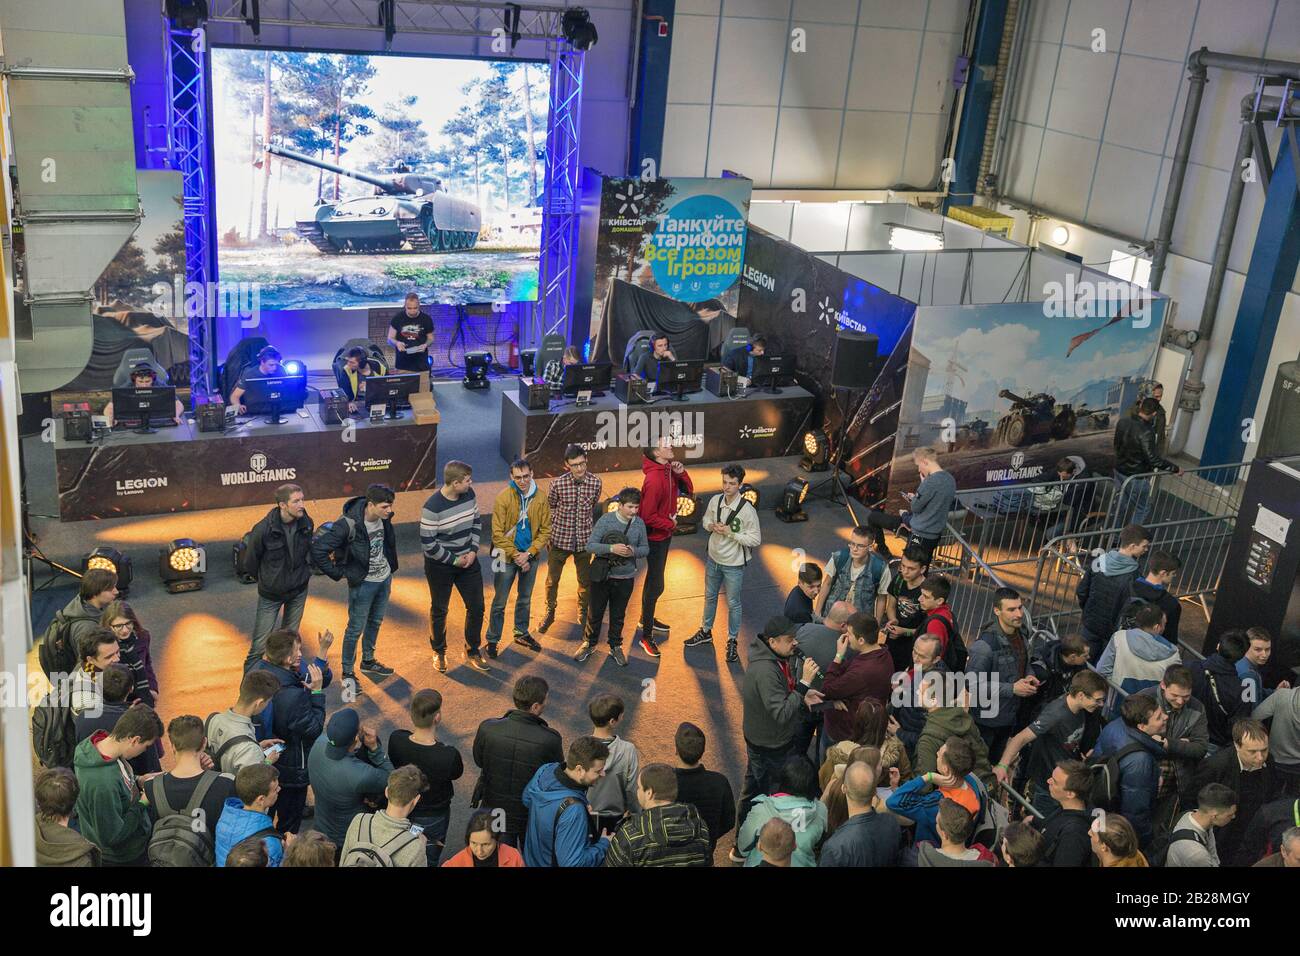 Kiev, UCRAINA - 13 APRILE 2019: I giocatori partecipano al torneo World of Tanks nella zona di gioco durante la CEE 2019, il più grande commercio di elettronica di consumo Foto Stock